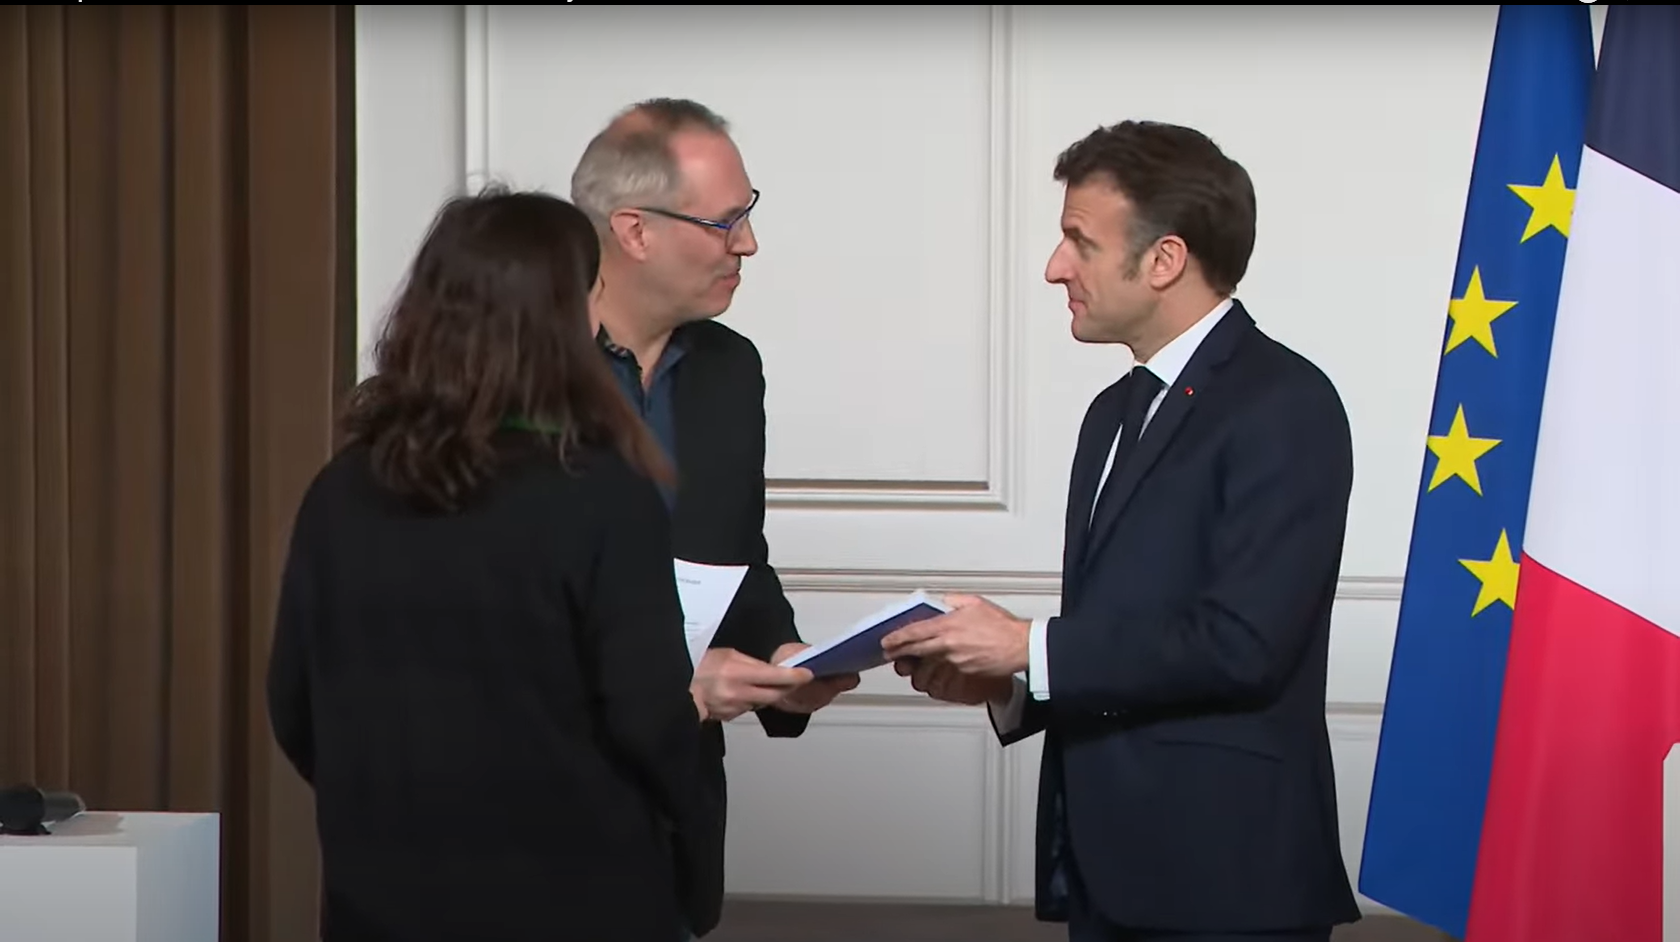 Marianne et Jean-Michel, rapporteurs de la Convention Citoyenne sur la fin de vie, et Emmanuel Macron, Président de la République